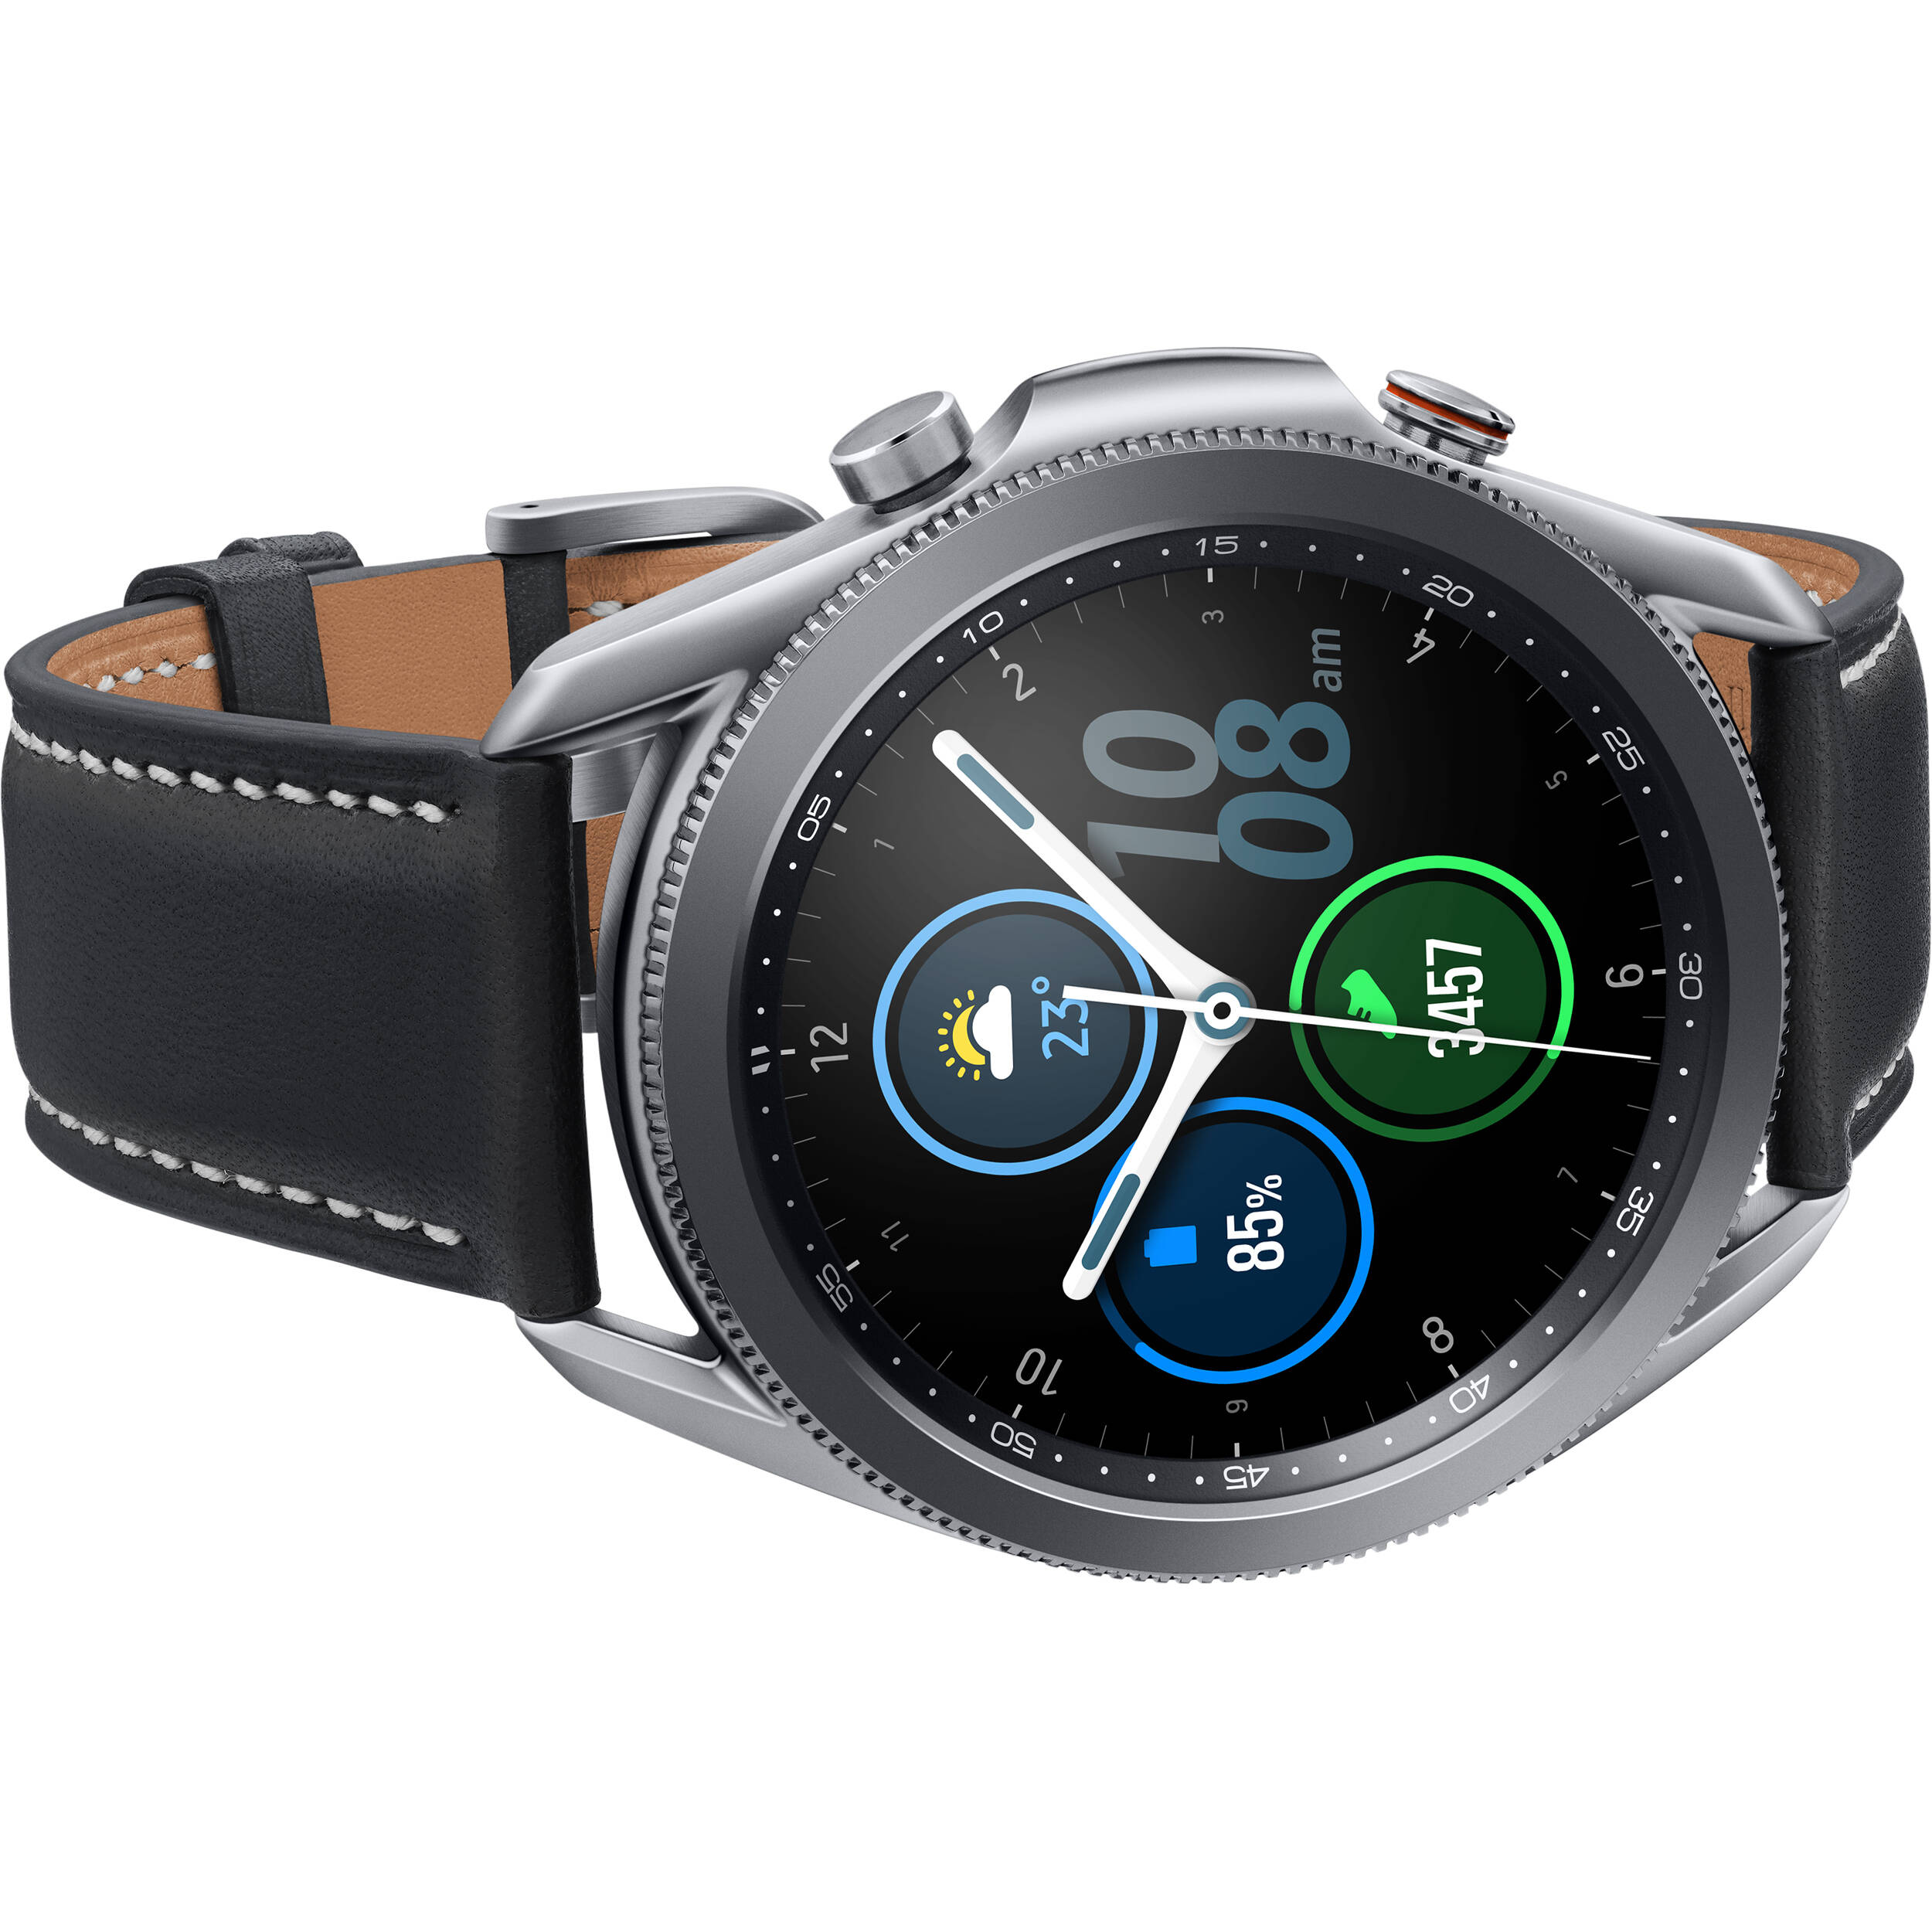 Samsung SR-SM-R840NZSAXAR-RB Galaxy Watch 3 45mm Bluetooth Silver - Seller Refurbished